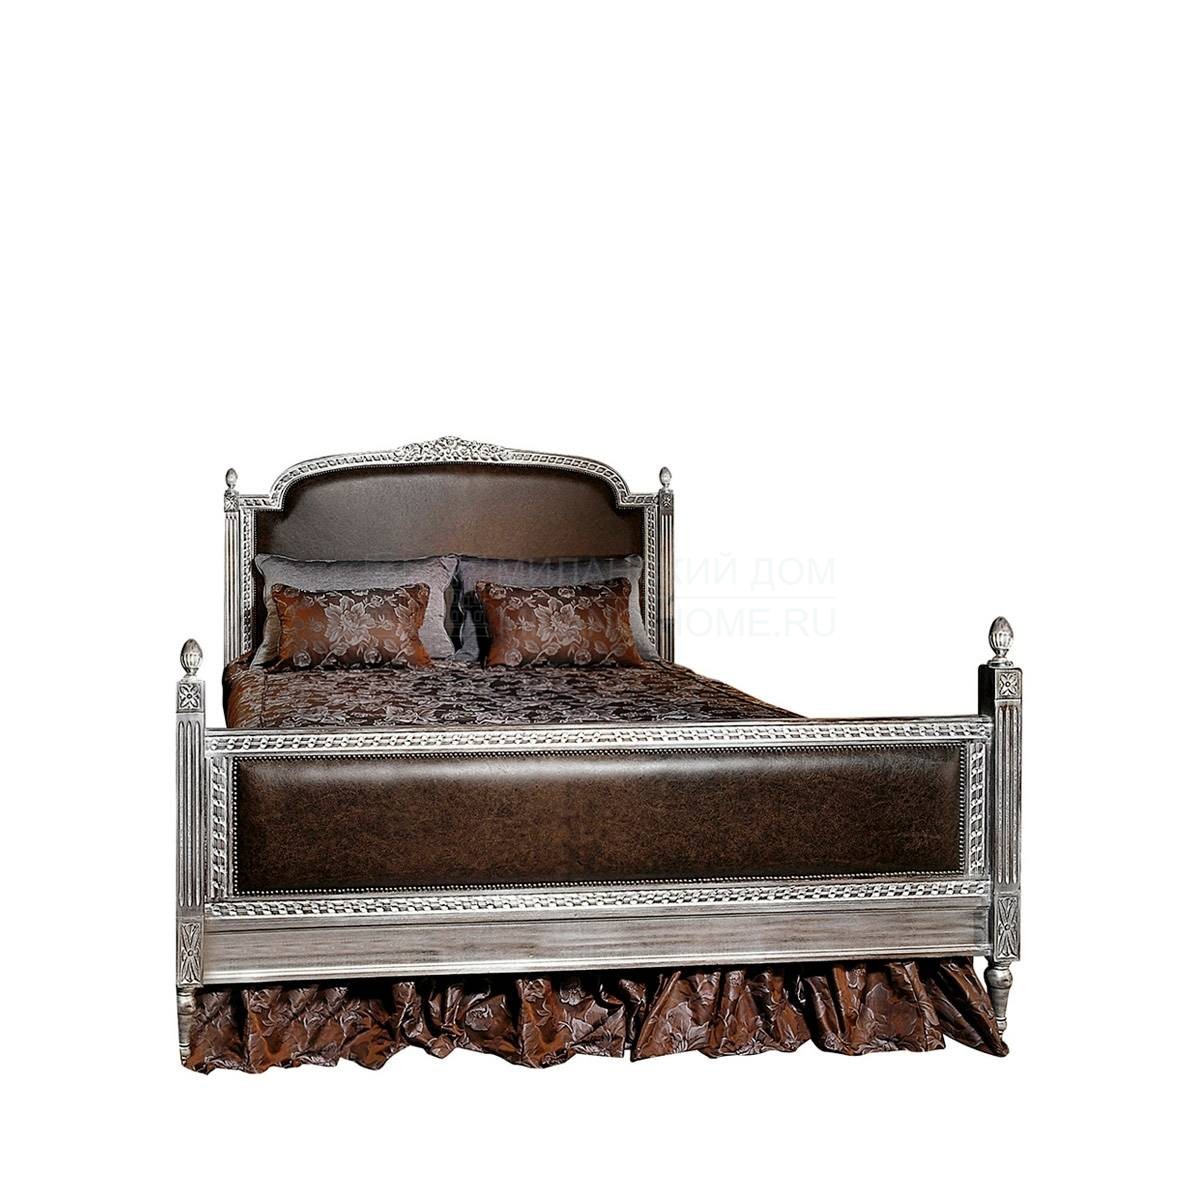 Кровать с мягким изголовьем Angeles/S3926/S3925/S3927 из Испании фабрики COLECCION ALEXANDRA